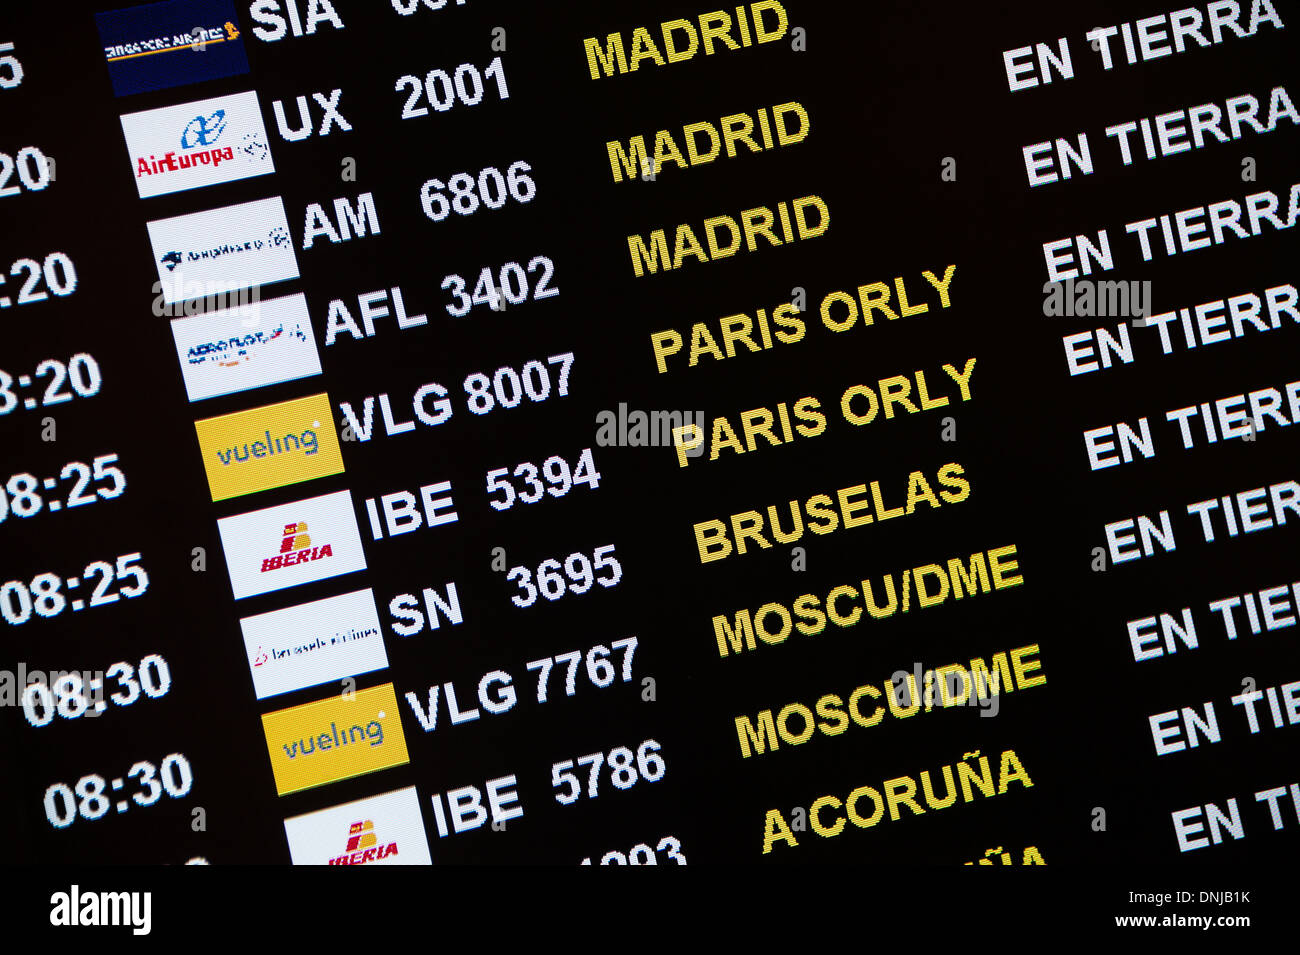 Lo stato dei voli visualizzati in airport terminal, Barcellona, Spagna Foto Stock